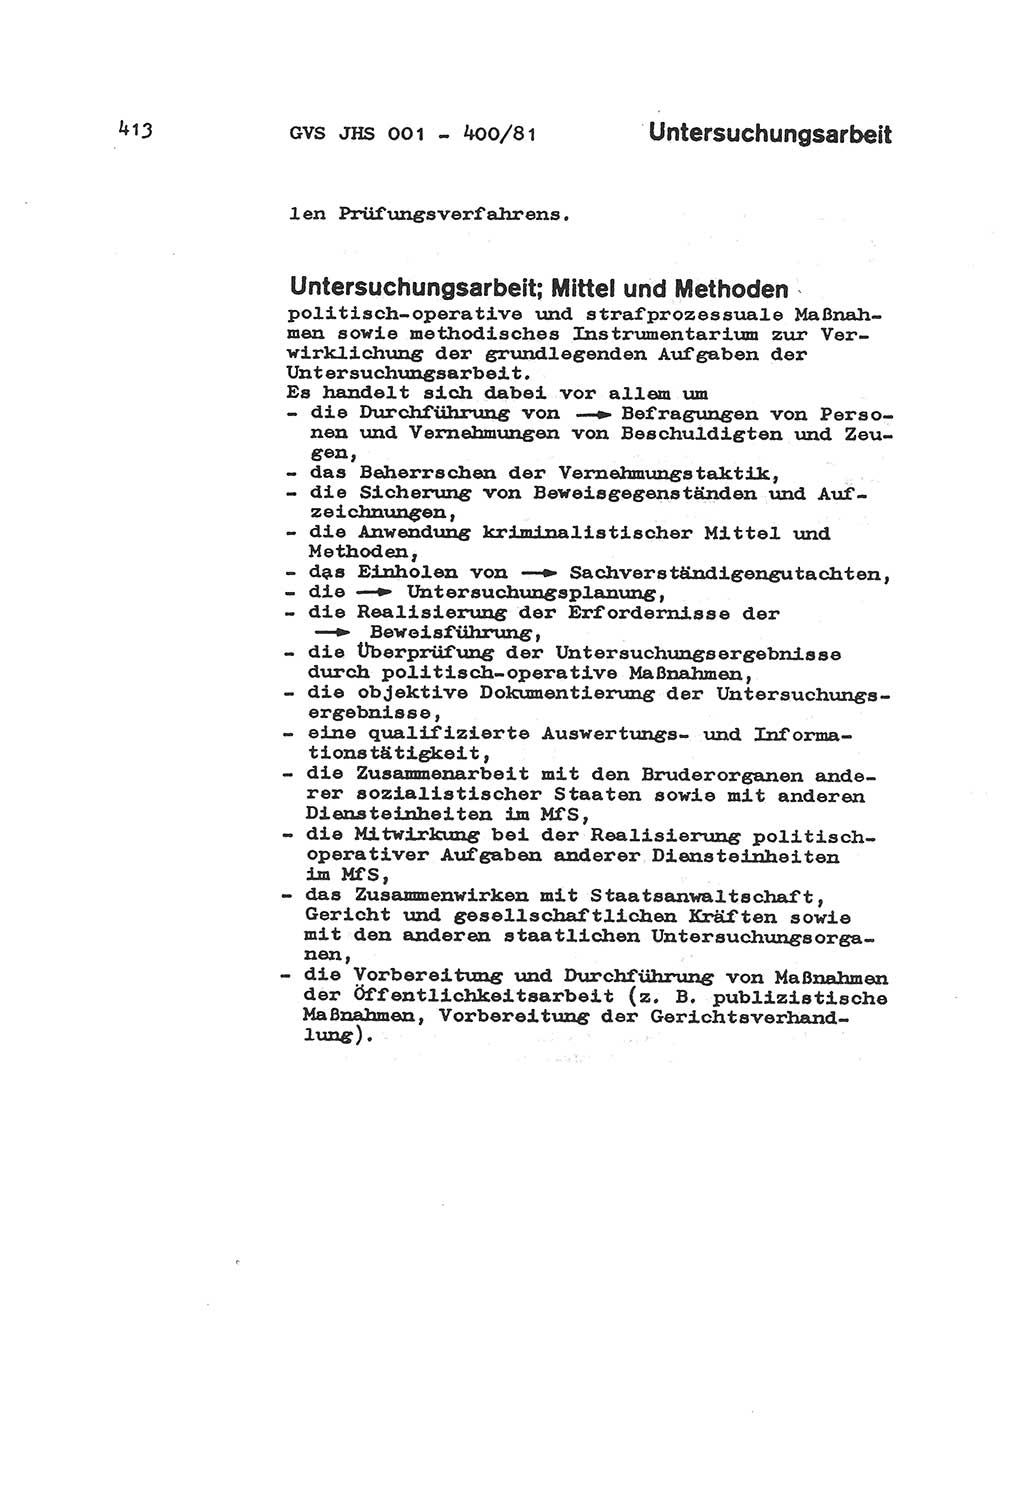 Wörterbuch der politisch-operativen Arbeit, Ministerium für Staatssicherheit (MfS) [Deutsche Demokratische Republik (DDR)], Juristische Hochschule (JHS), Geheime Verschlußsache (GVS) o001-400/81, Potsdam 1985, Blatt 413 (Wb. pol.-op. Arb. MfS DDR JHS GVS o001-400/81 1985, Bl. 413)